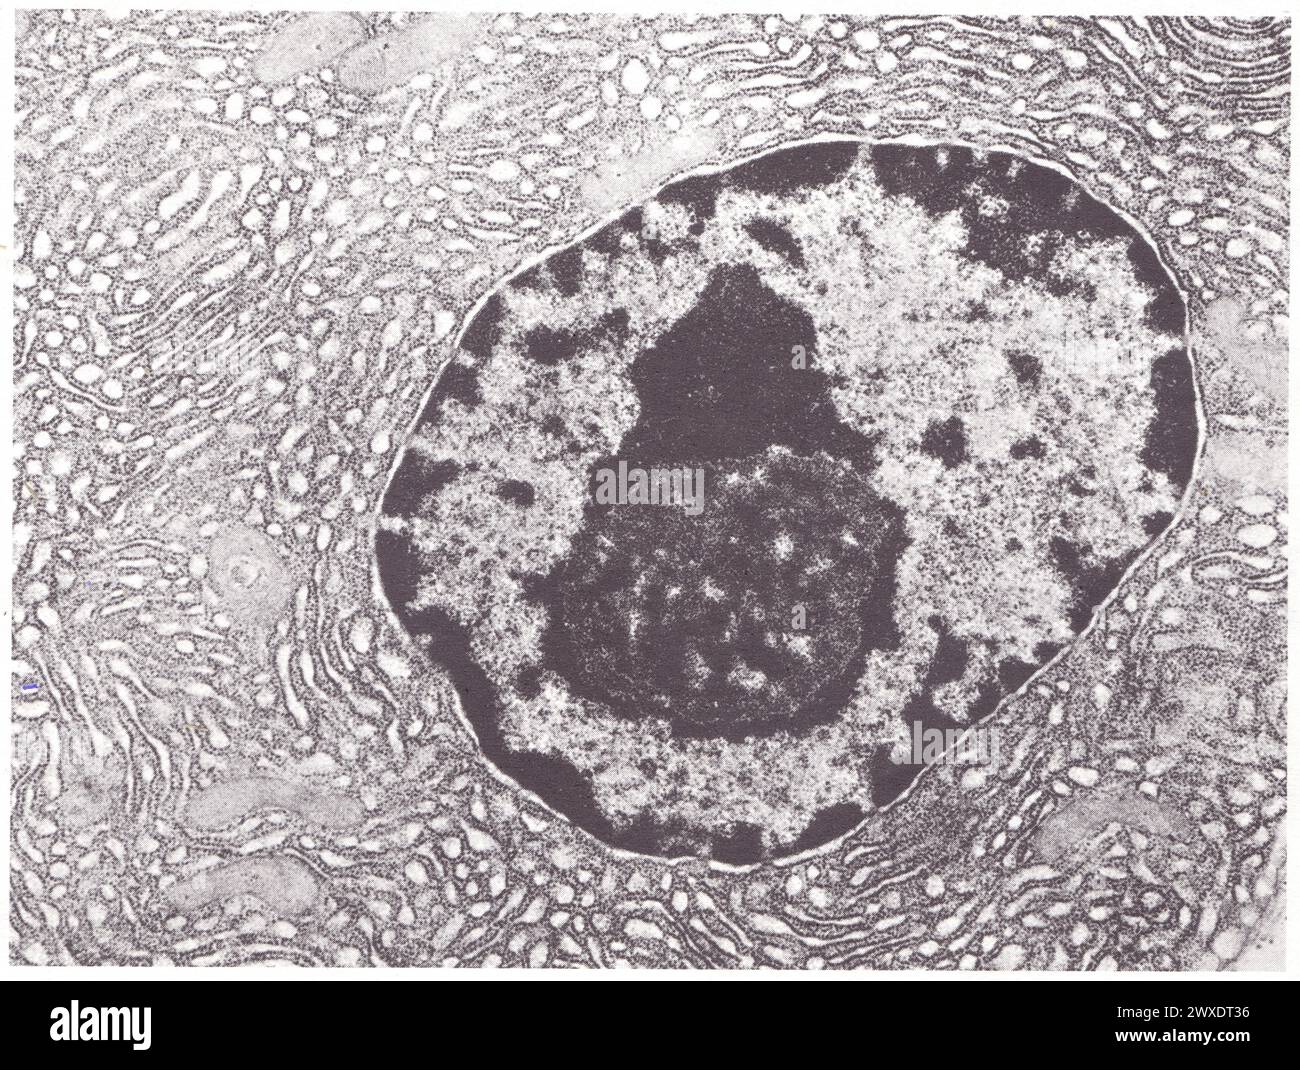 Struktur d'Ensemble d'une cellule pancréas de souris Stockfoto